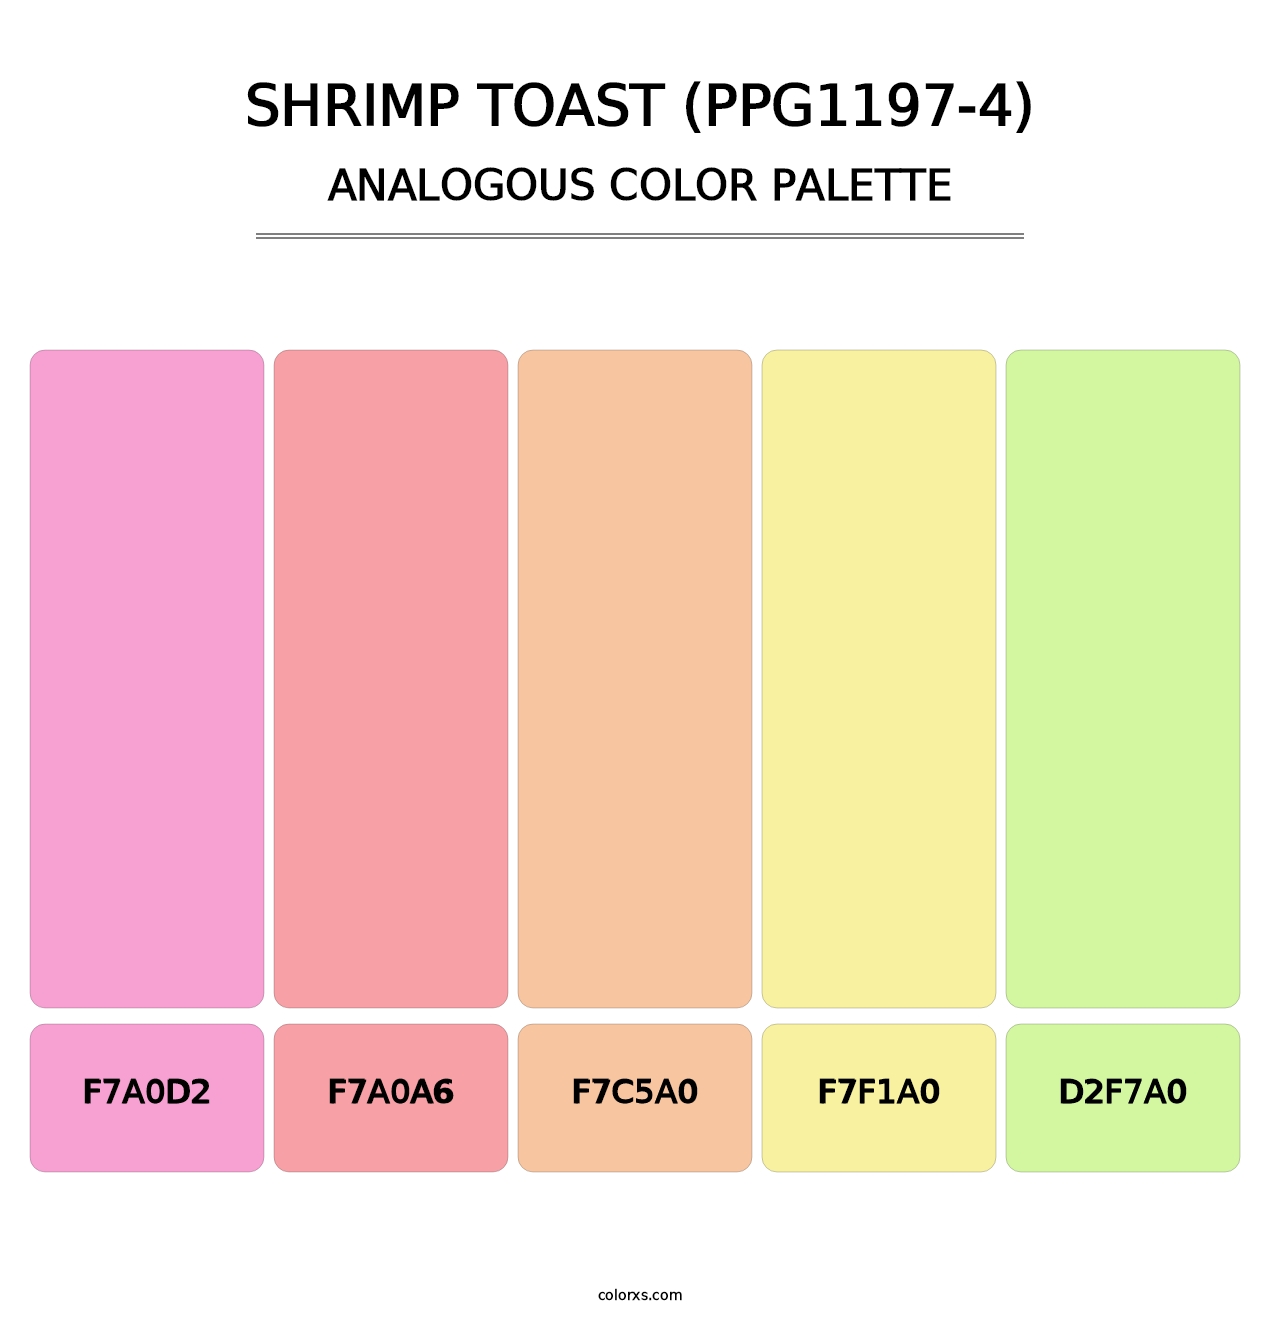 Shrimp Toast (PPG1197-4) - Analogous Color Palette